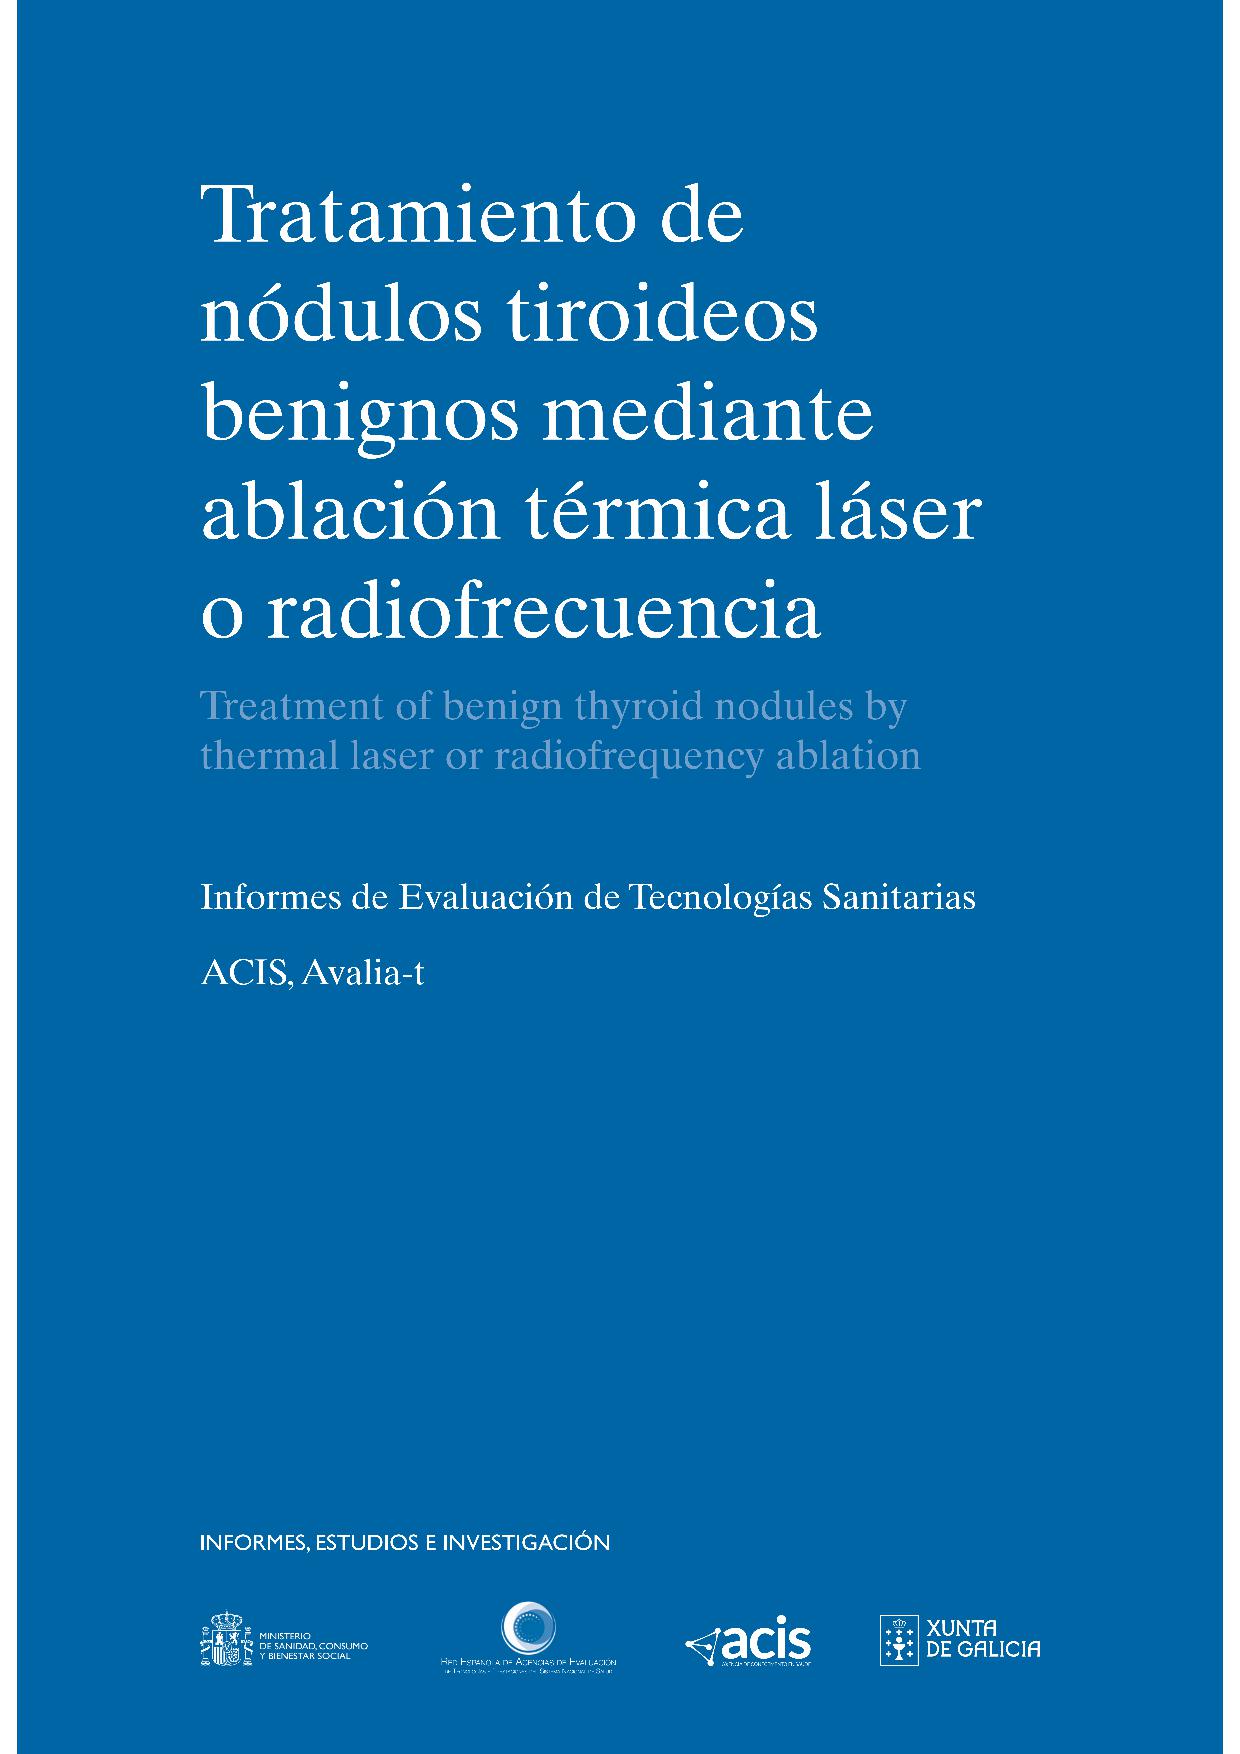 Imagen de portada del libro Tratamiento de nódulos tiroideos benignos mediante ablación térmica láser o radiofrecuencia